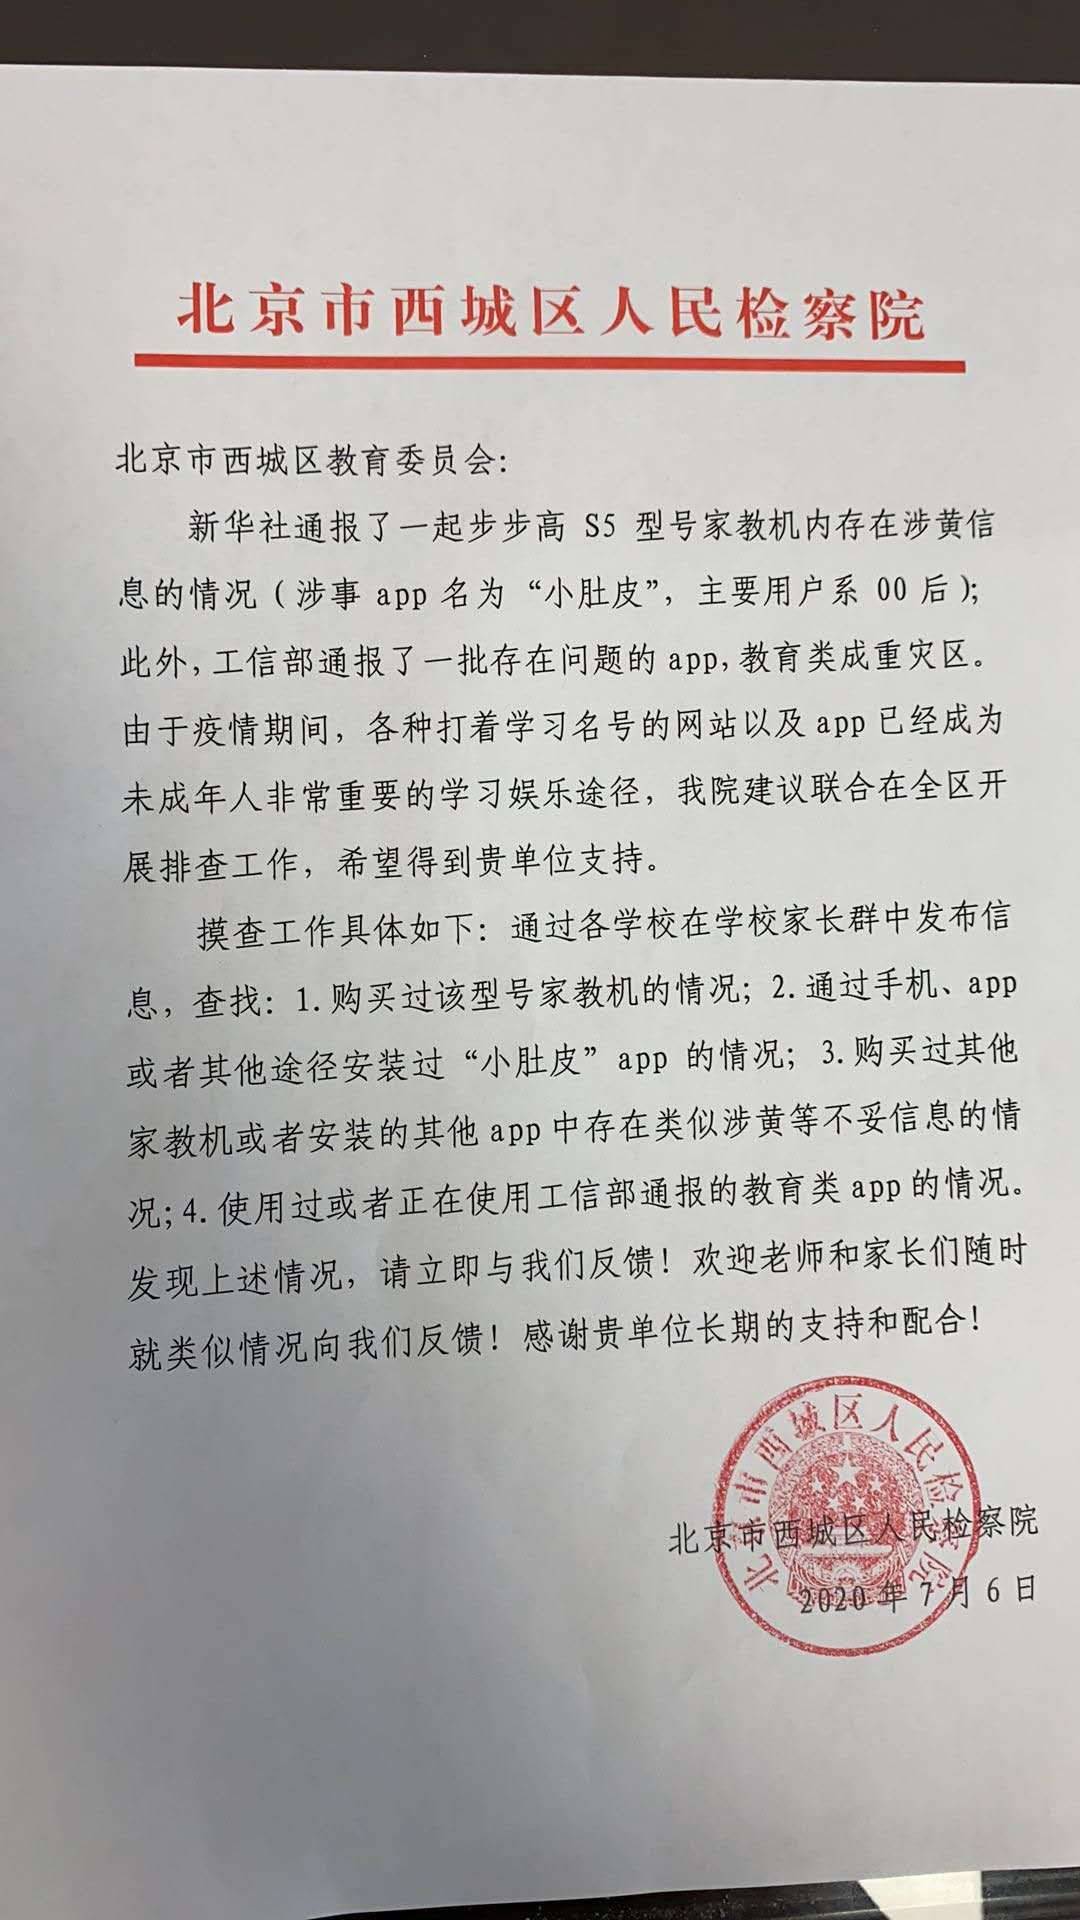 家教机含涉黄内容续：北京西城检方就教育App问题向学校发预警